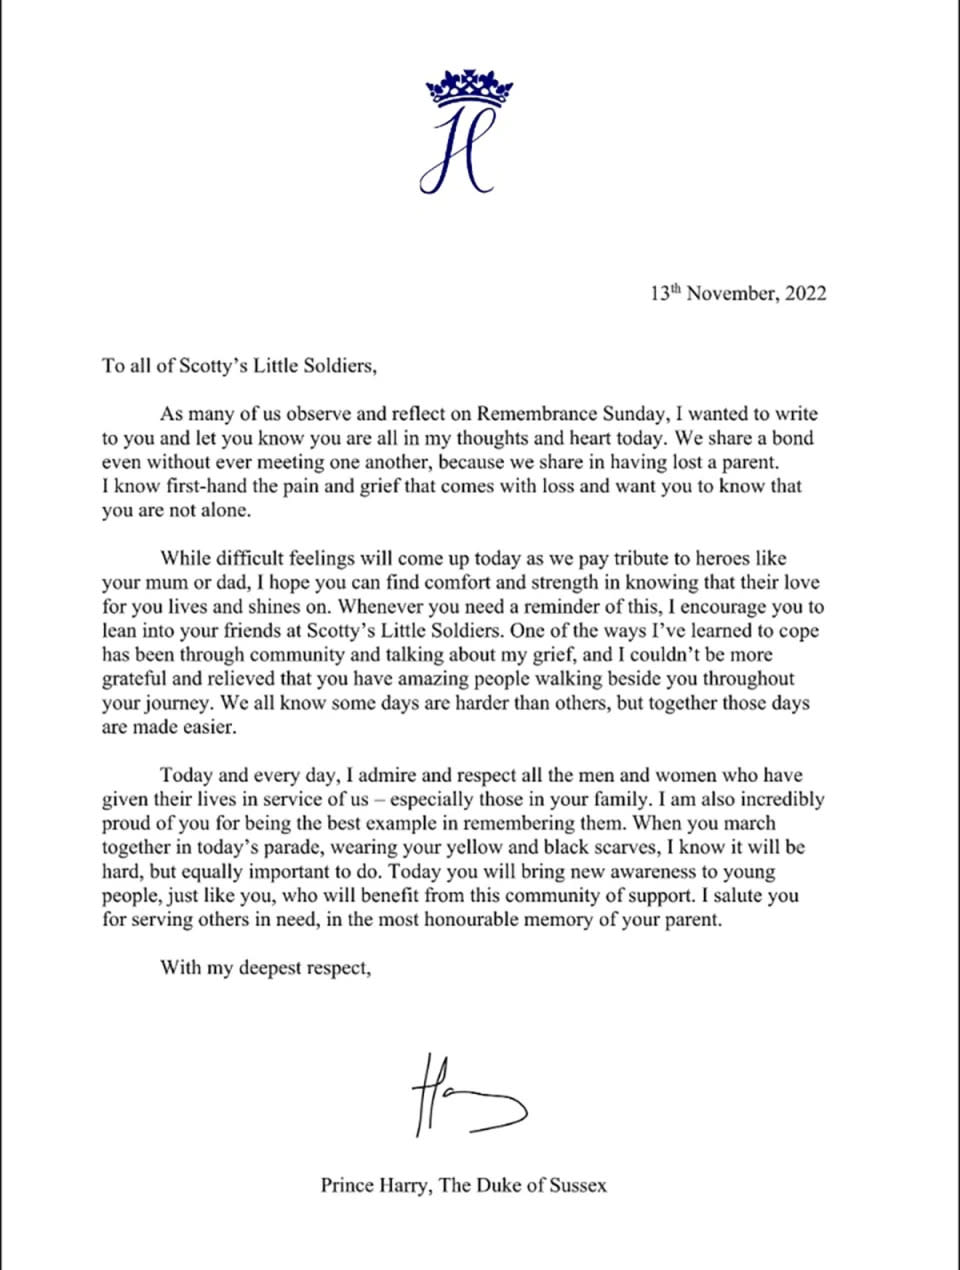 Der Herzog von Sussex schrieb einen Brief an Mitglieder von Scotty&#x002019;s Little Soldiers, einer gemeinn&#xfc;tzigen Organisation f&#xfc;r trauernde Kinder und Jugendliche der britischen Streitkr&#xe4;fte. Foto: Scotty&#x002019;s Little Soldiers.